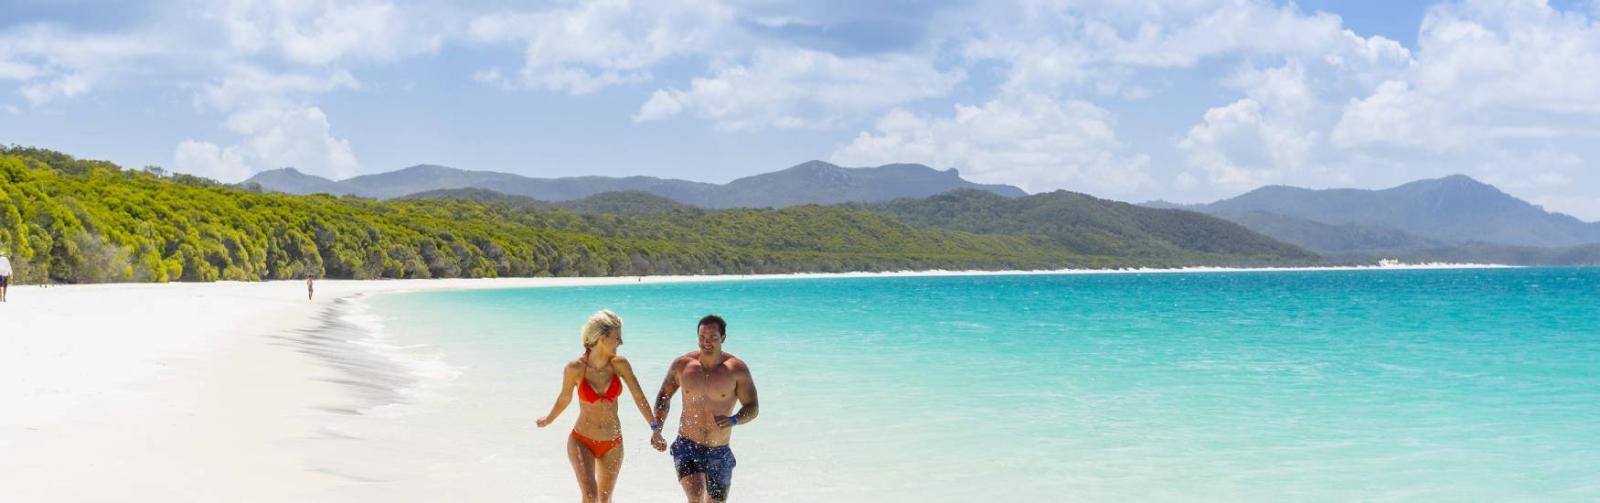 The best honeymoon destinations in Tropical North Queensland